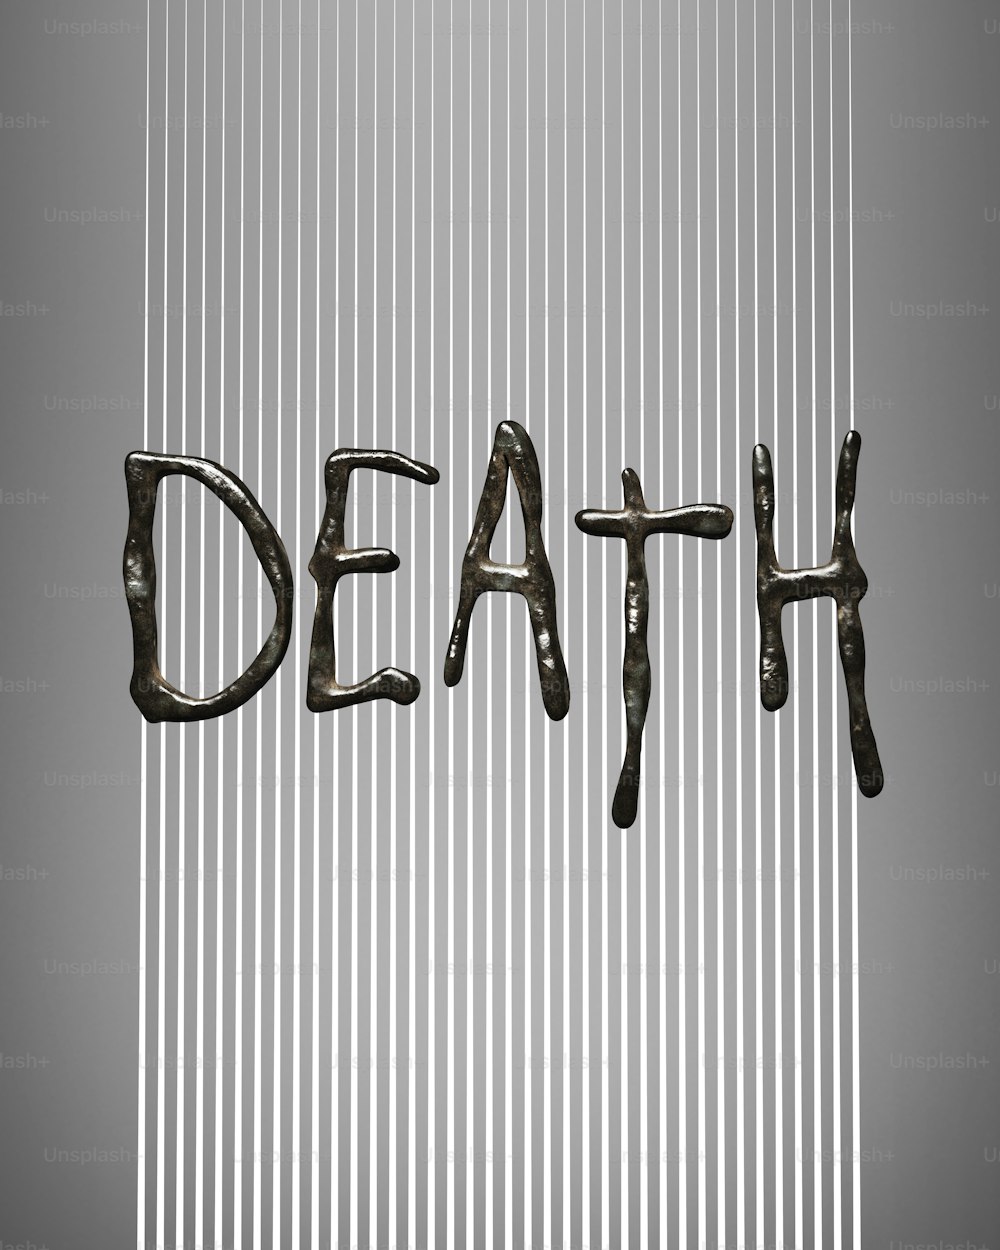 Das Wort Tod steht in Metallbuchstaben